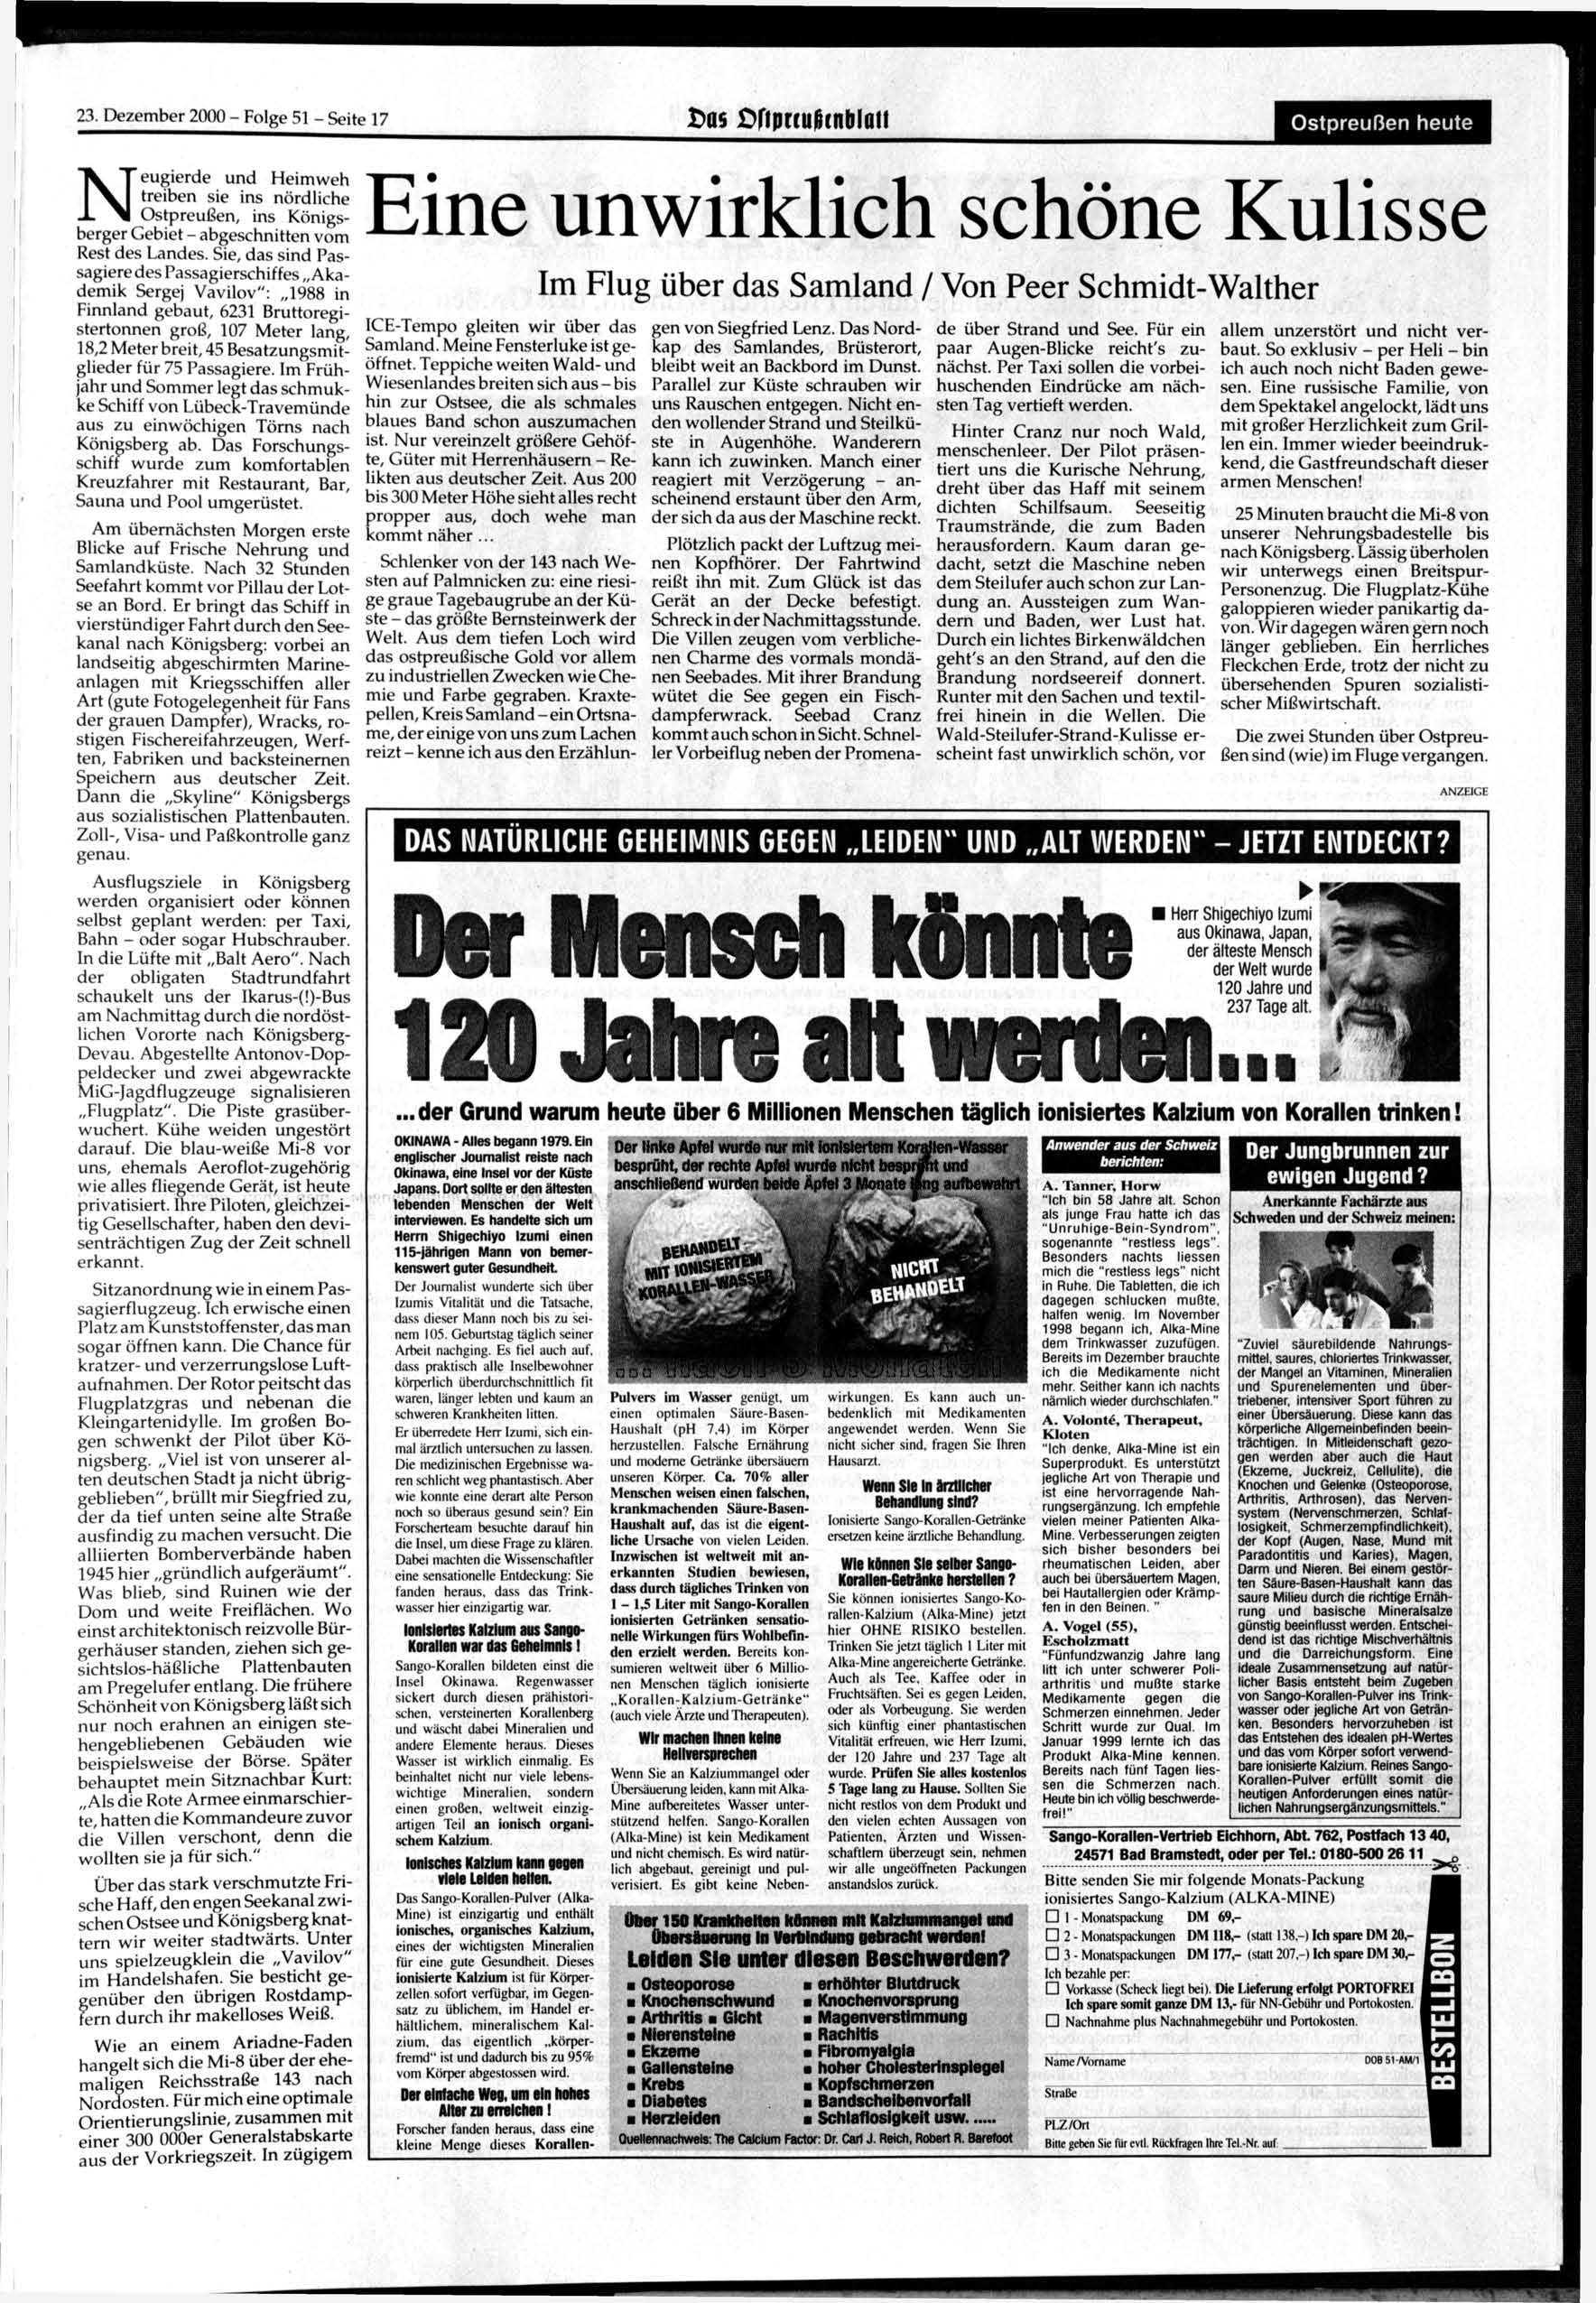 23. Dezember 2000 - Folge 51 - Seite 17 >as CriprrufHnblau Ostpreußen heute Neugierde und Heimweh treiben sie ins nördliche Ostpreußen, ins Königsberger Gebiet - abgeschnitten vom Rest des Landes.